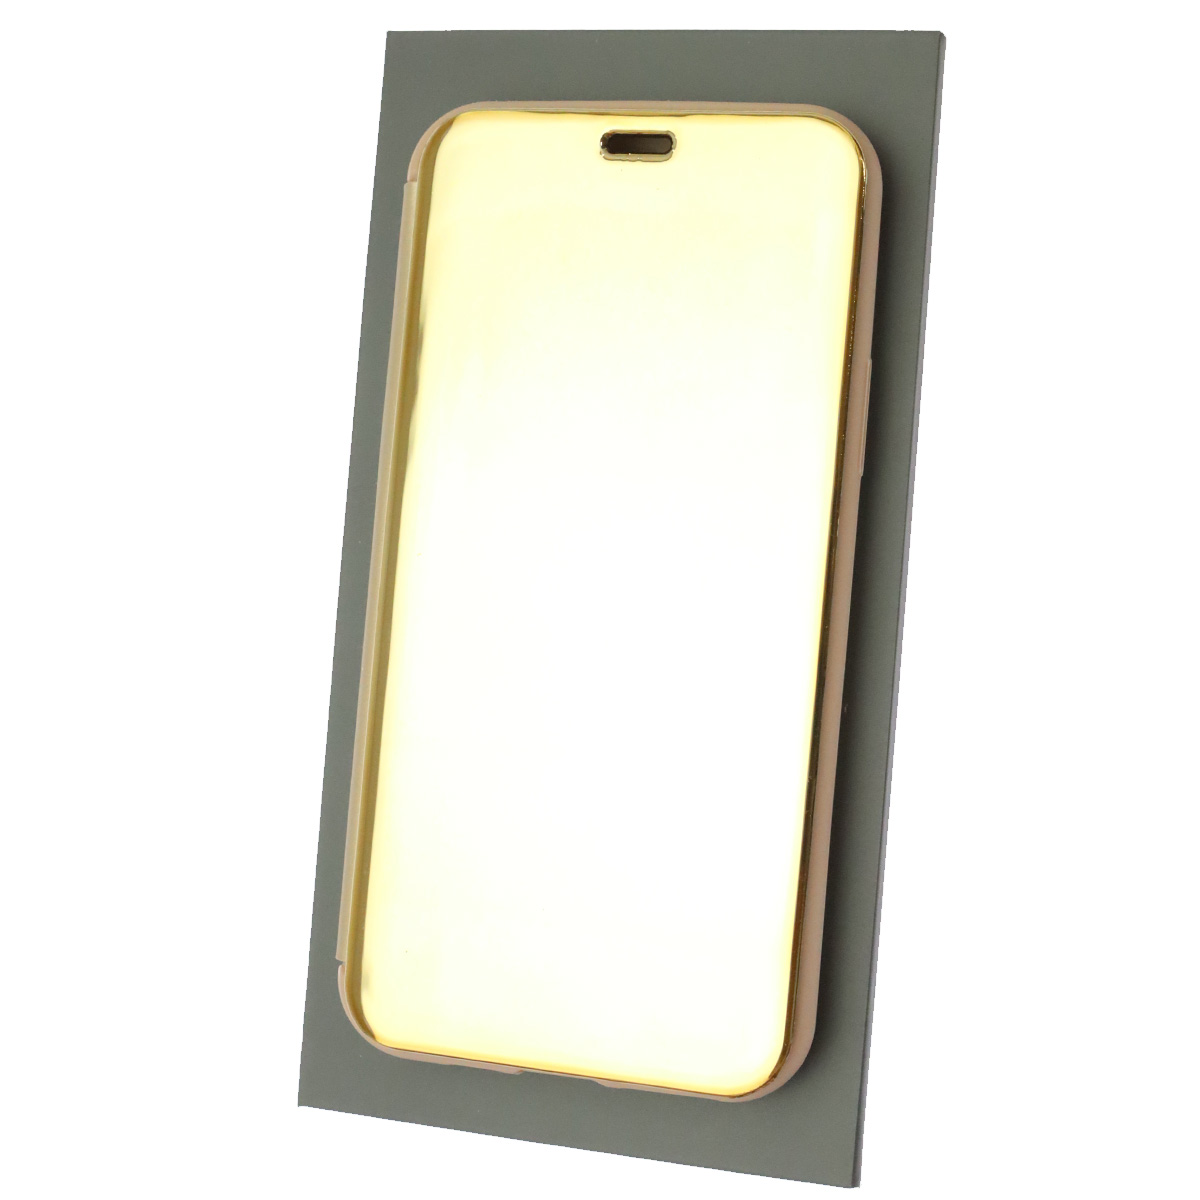 Чехол книжка для APPLE iPhone 11 Pro, крышка зеркало, цвет золотистый